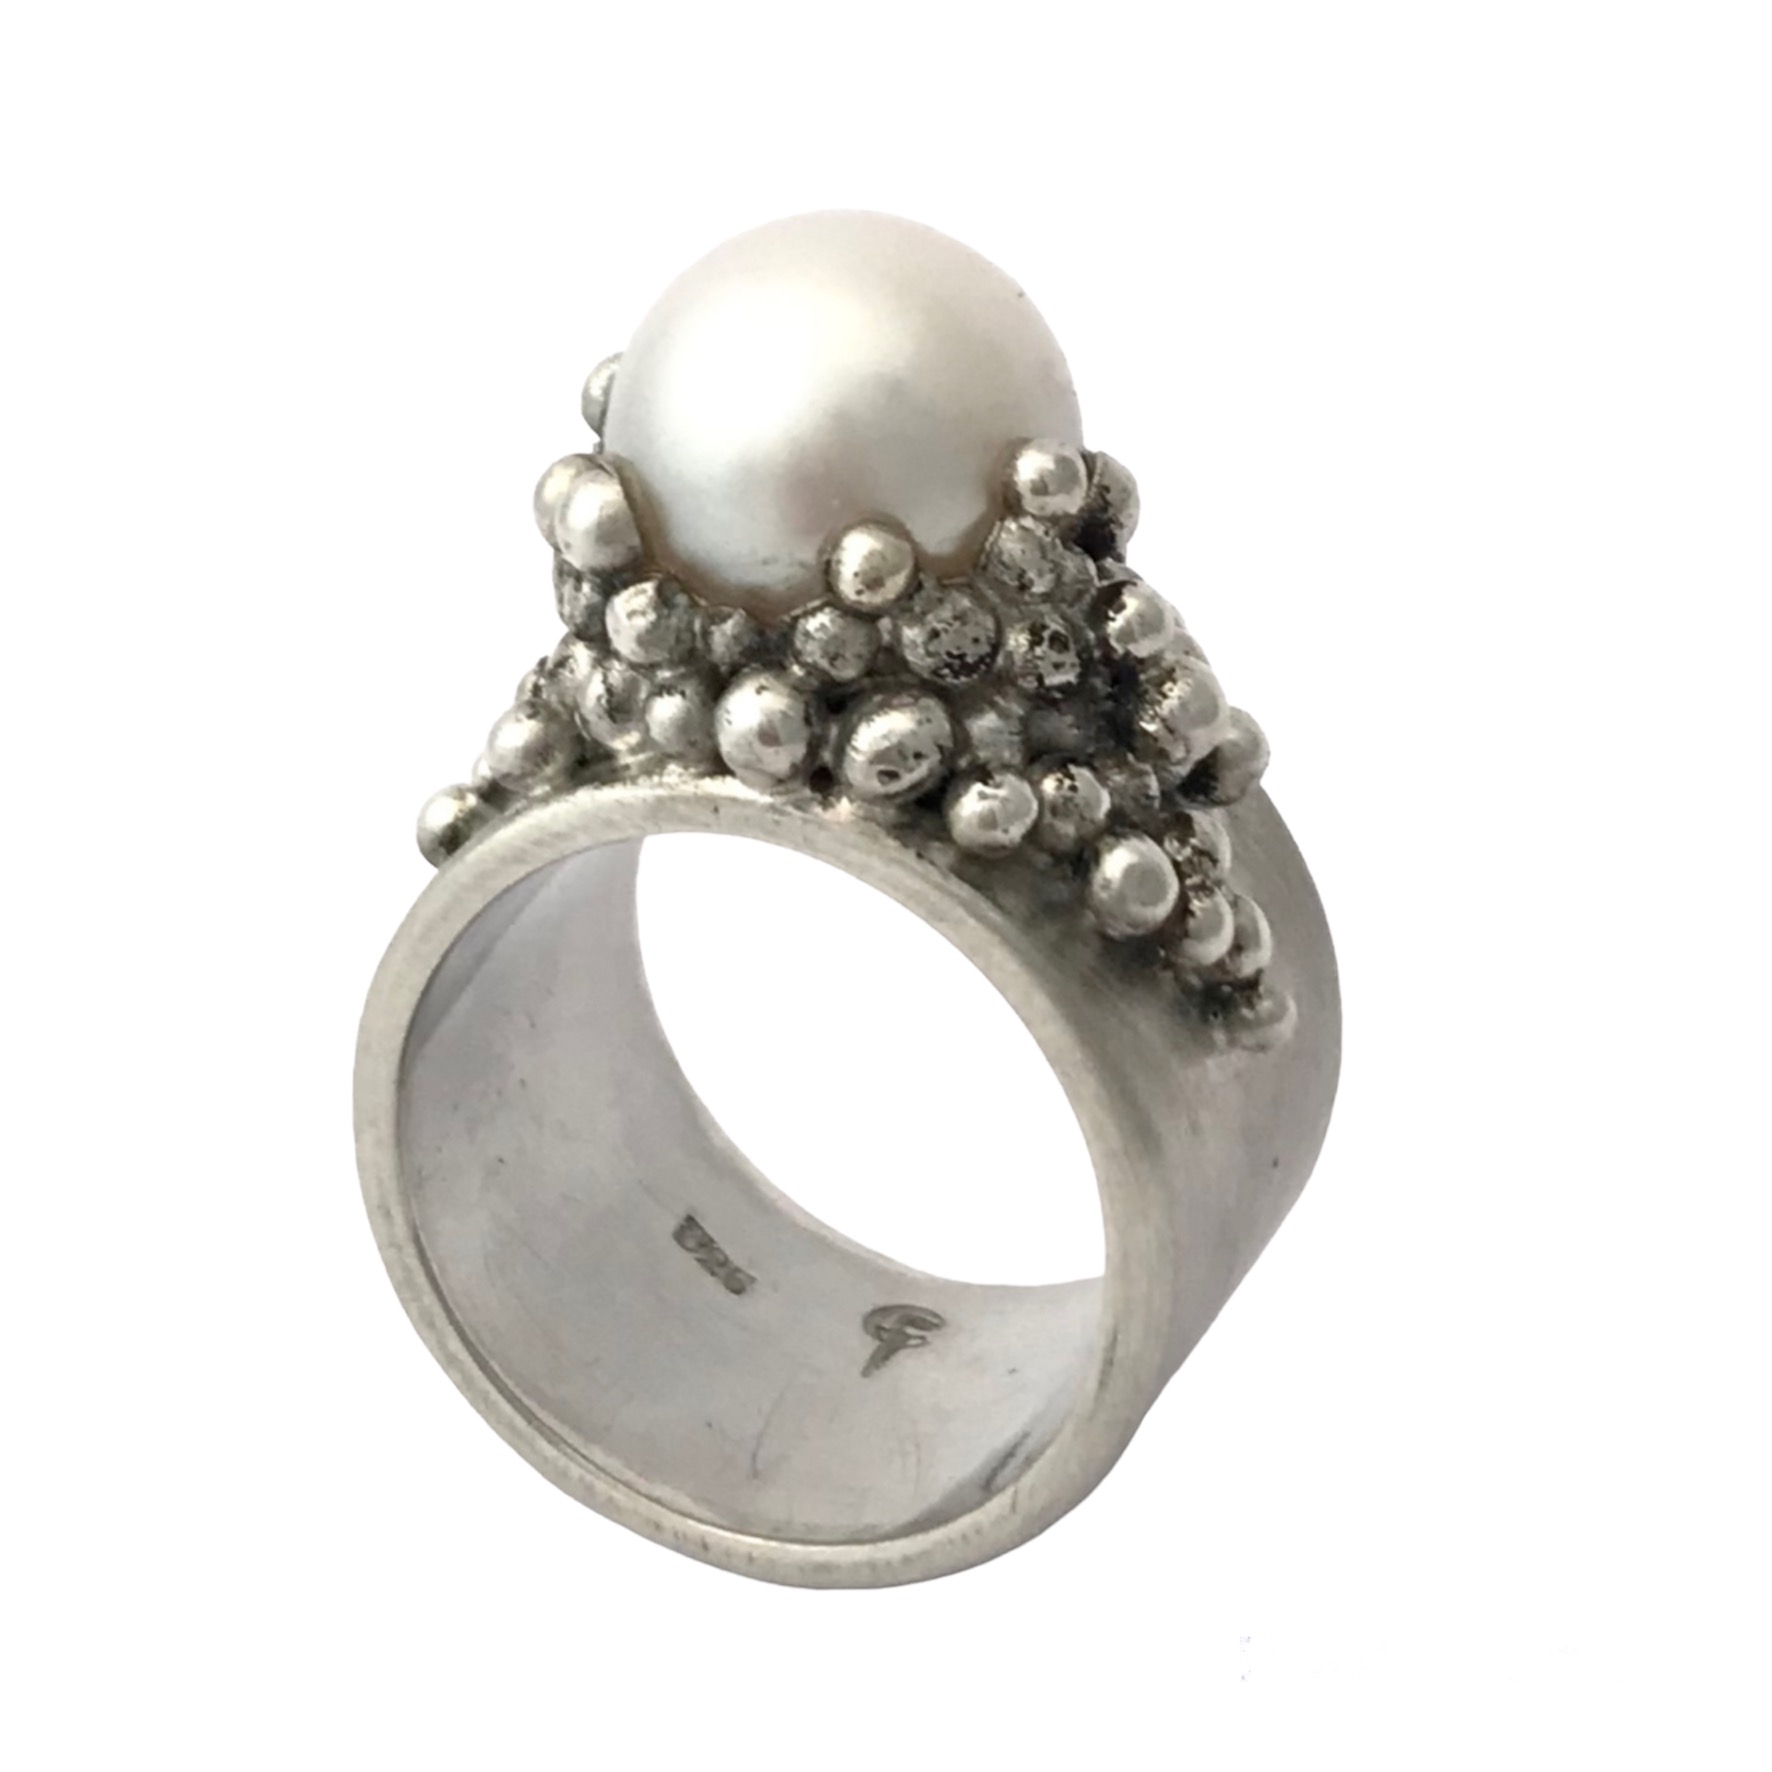 grove stoere zilveren ring met 1 hele grote witte zoetwater parel, om de parel heen zitten kleine zilveren balletjes als zetkast